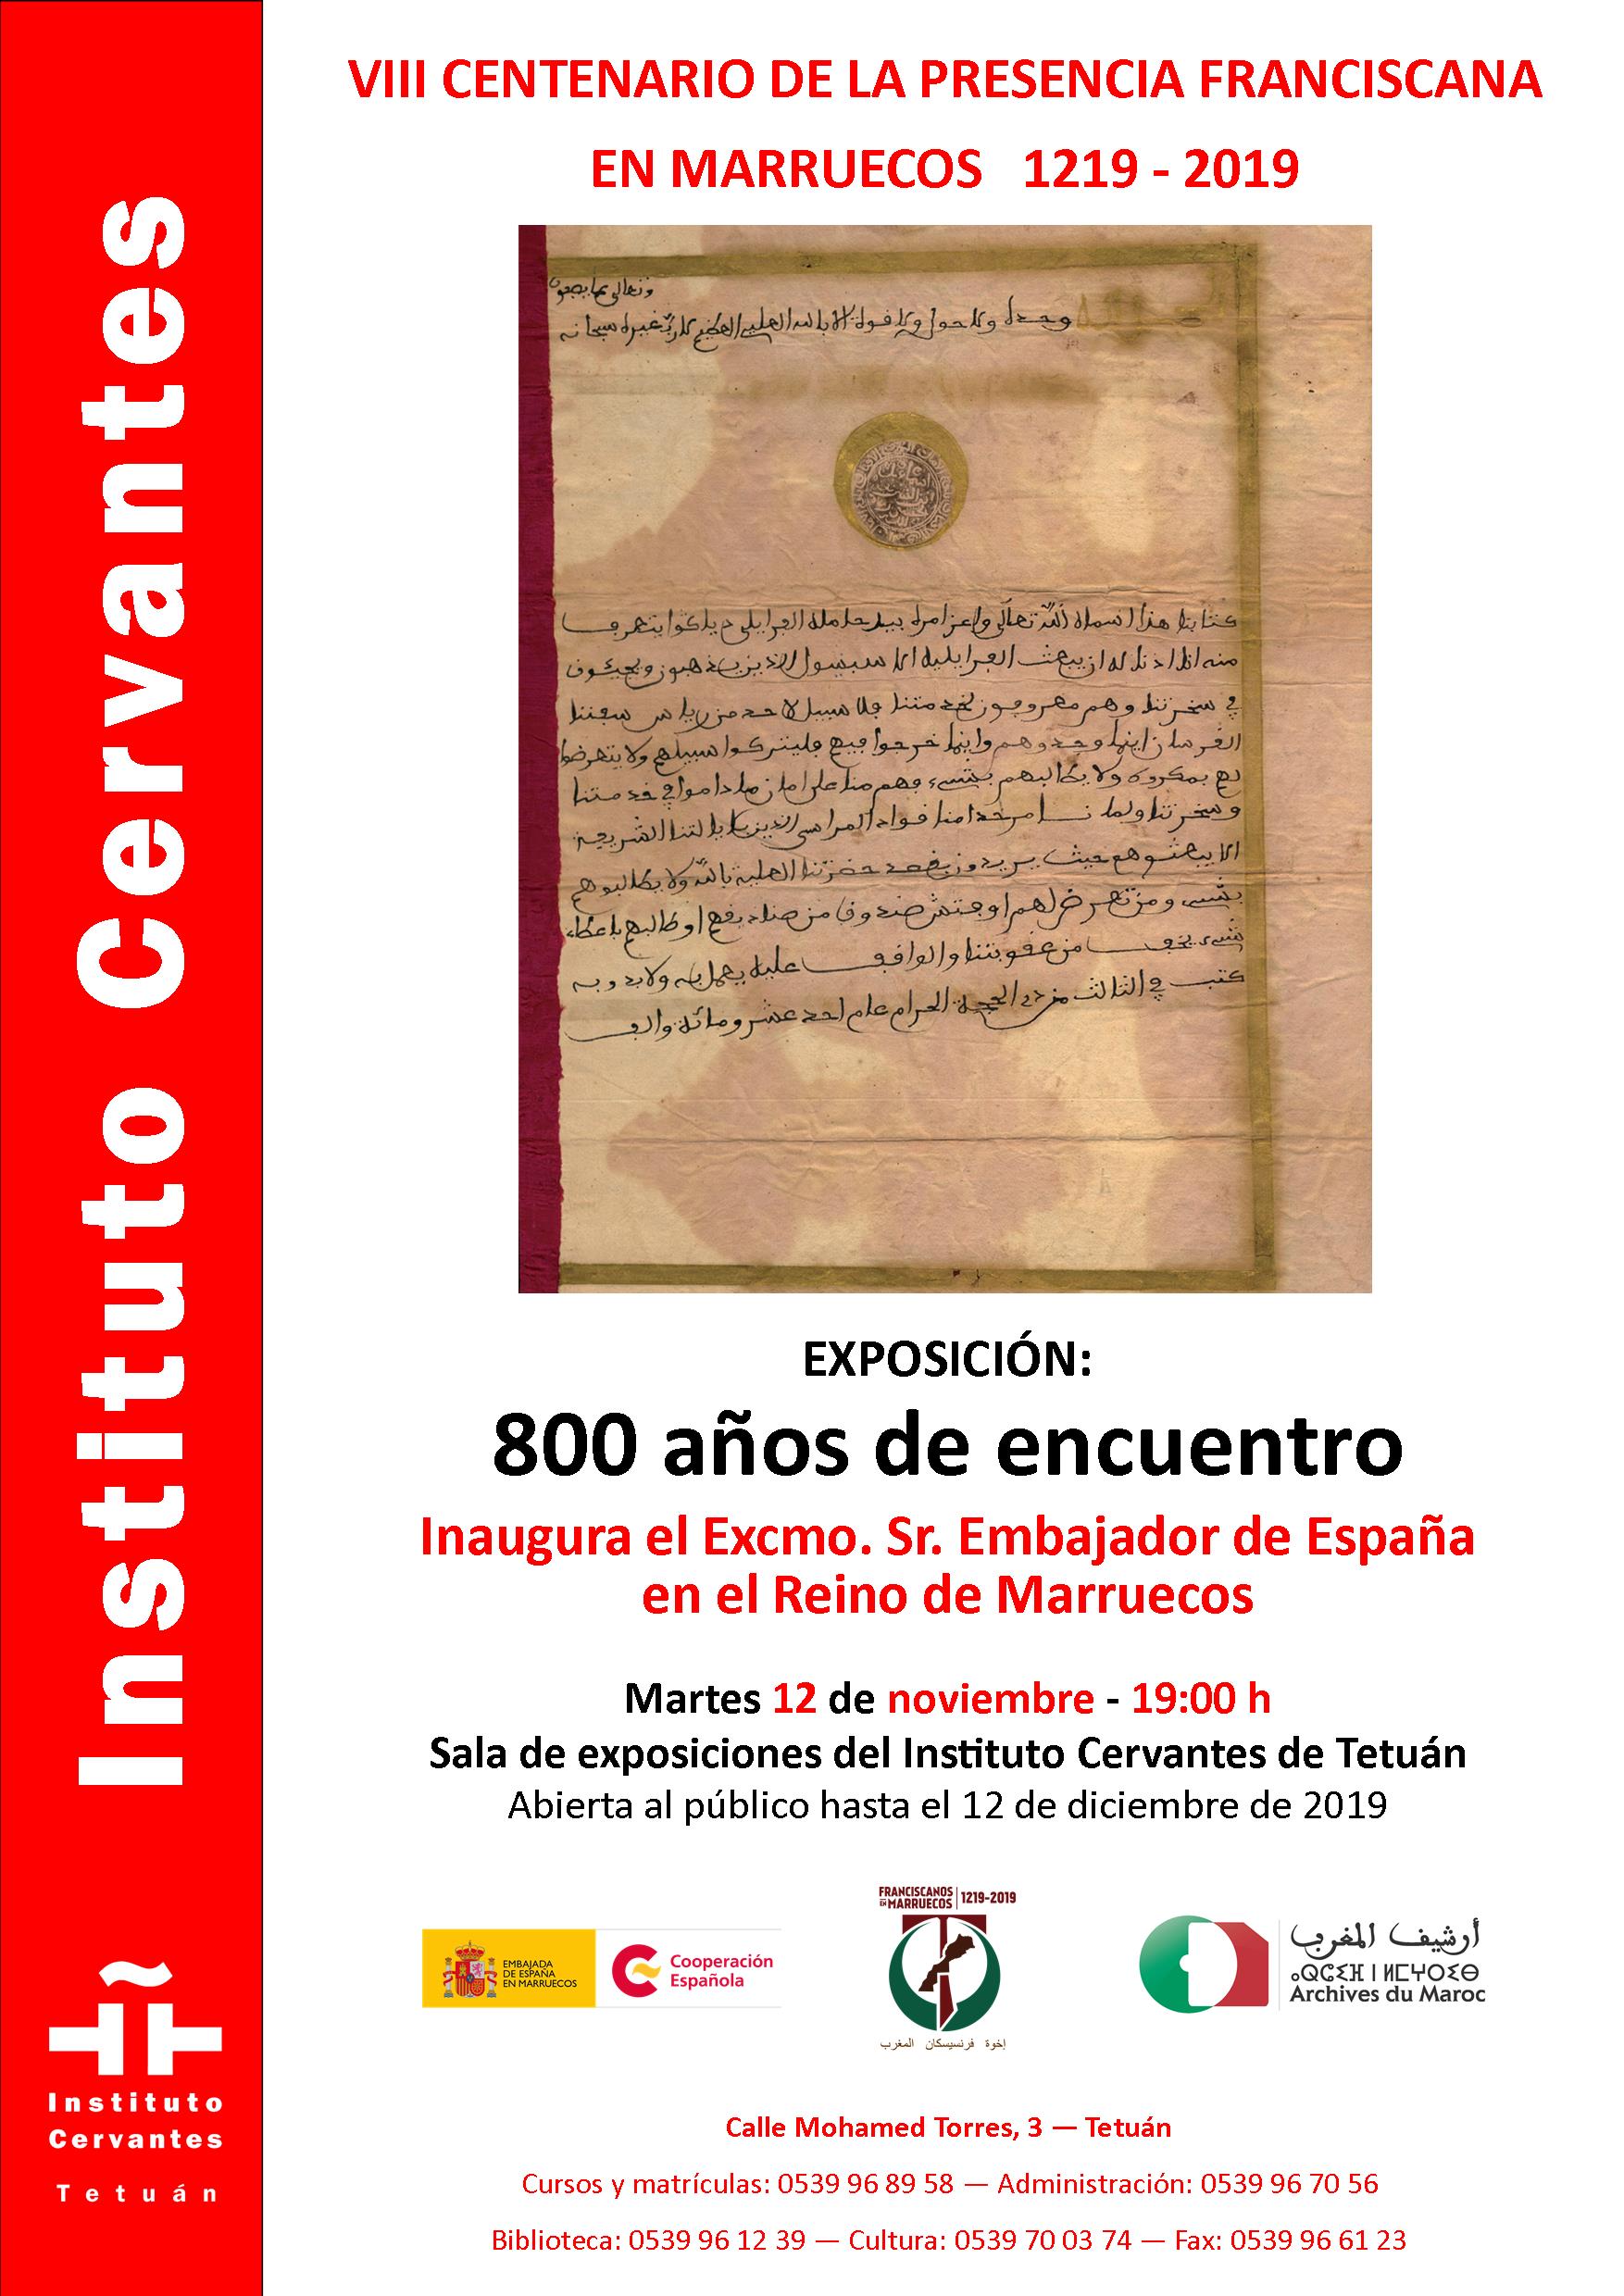 VIII Centenario de la presencia franciscana en Marruecos 1219 - 2019